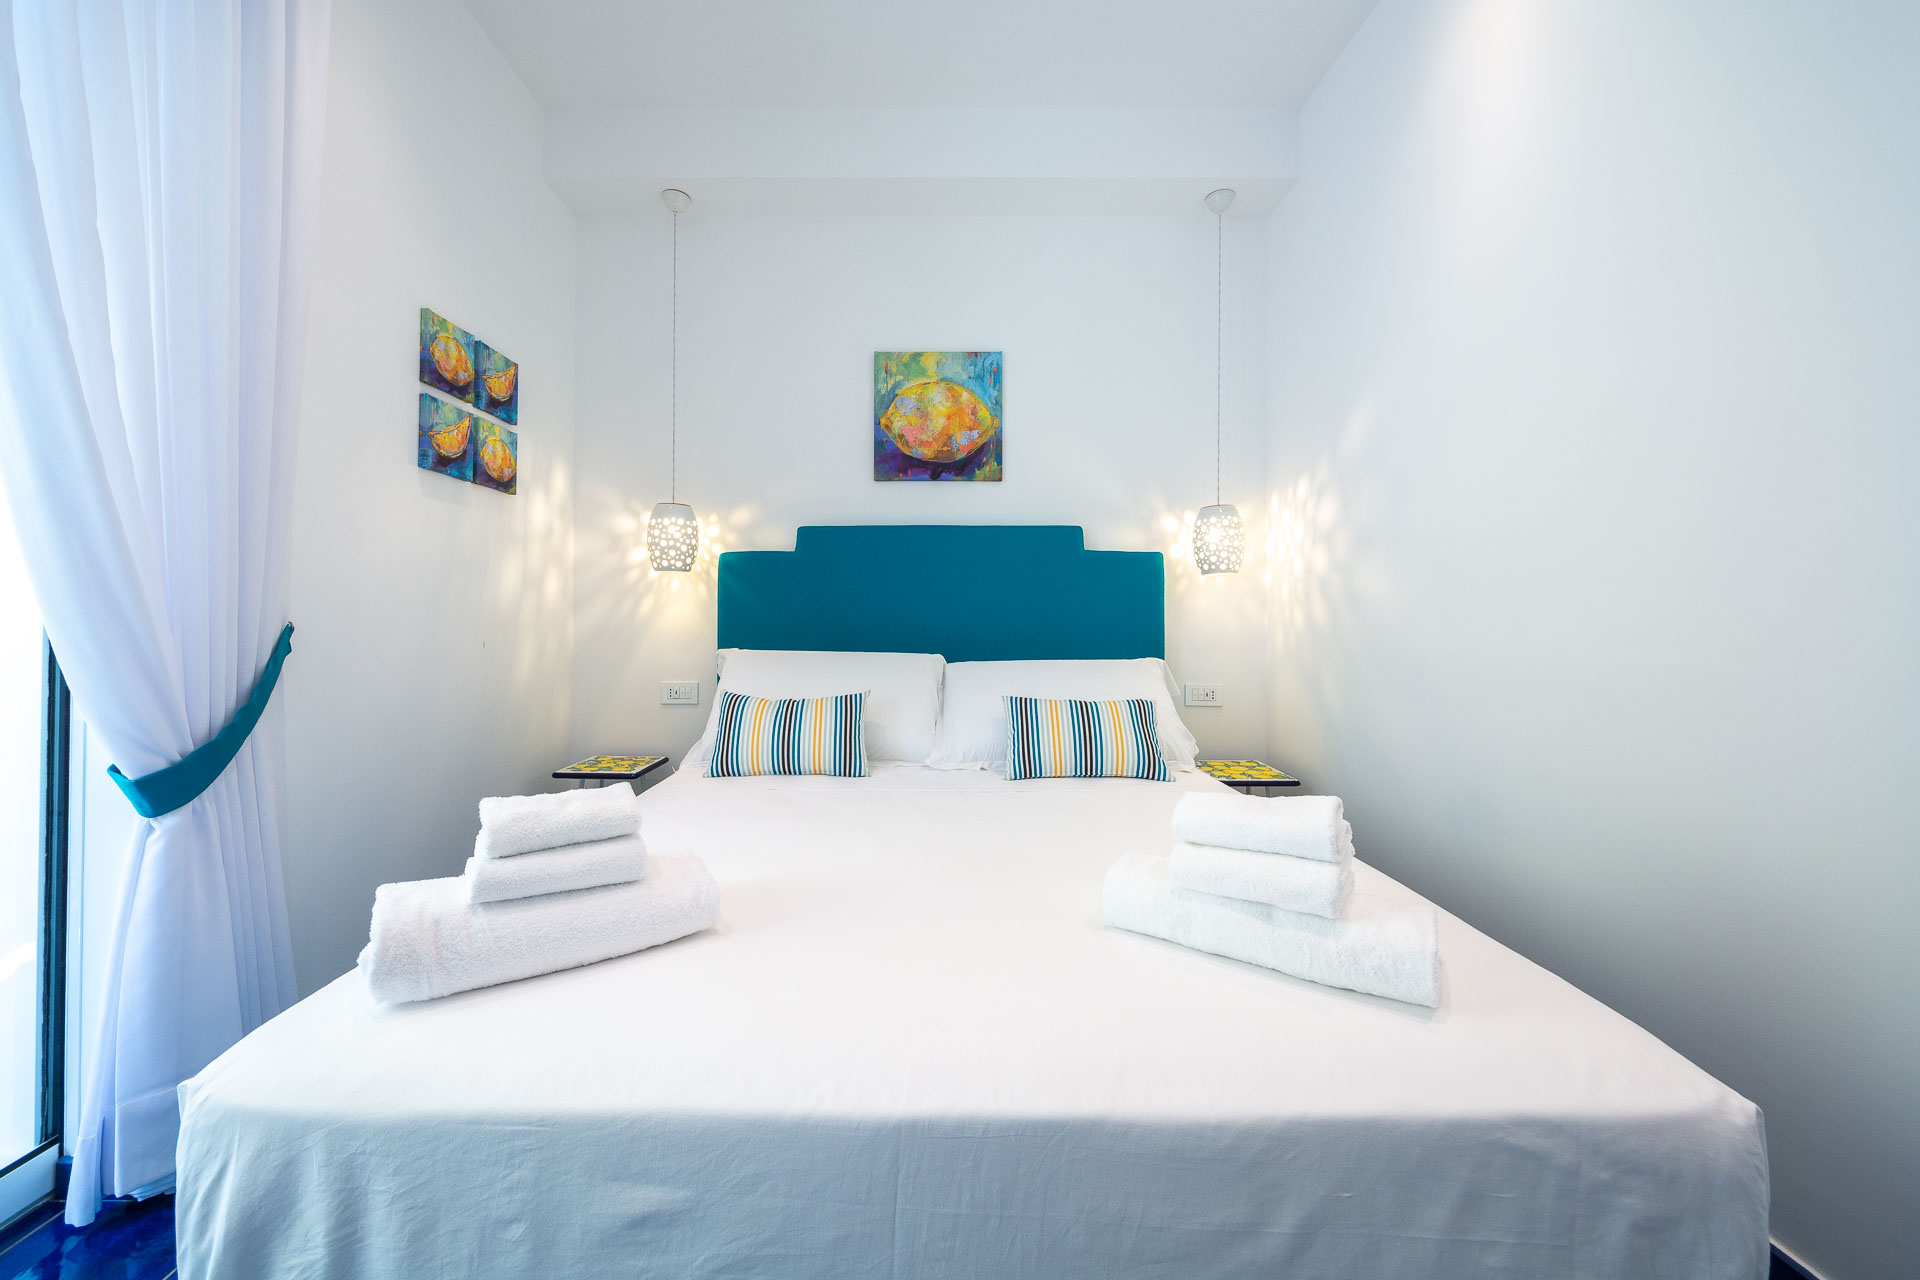 4blu - casa vacanze - maiori - amalfi coast - camere - rooms